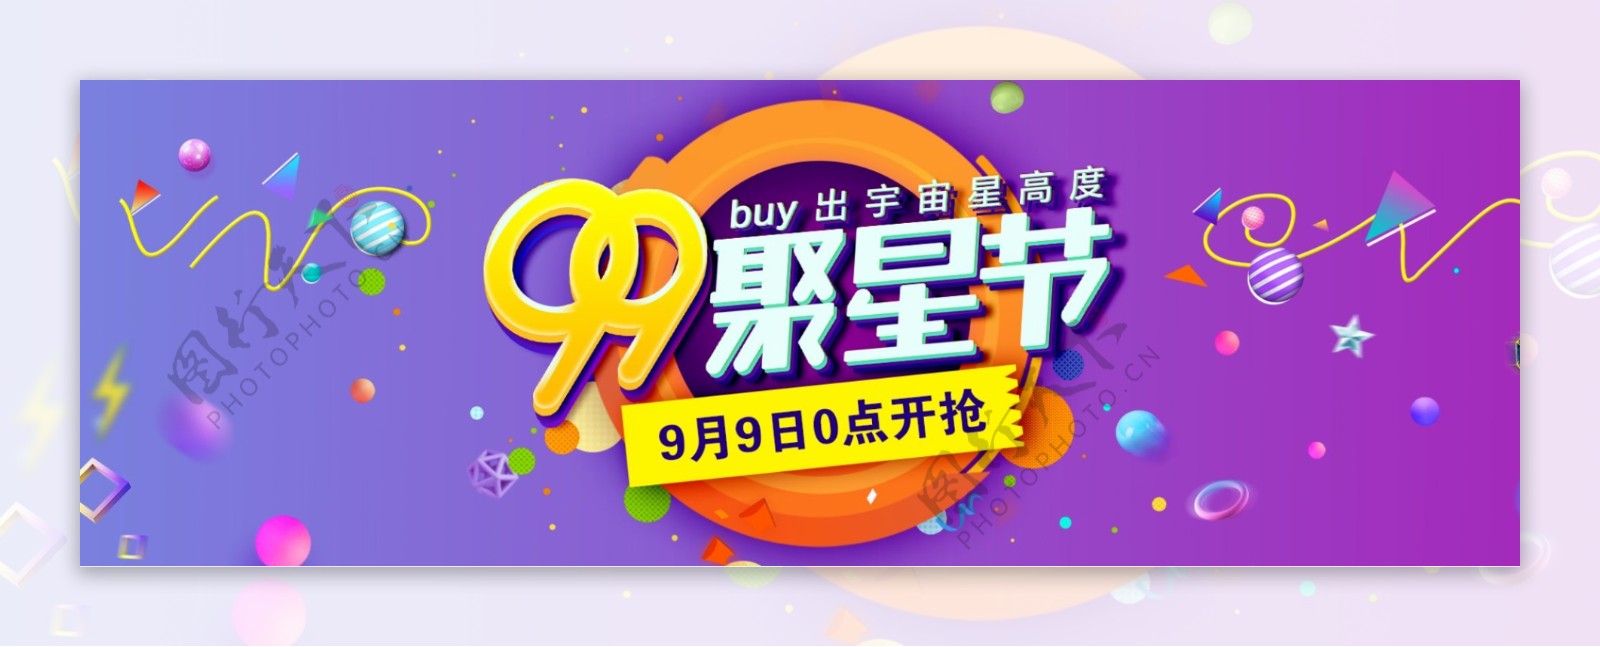 天猫淘宝电商促销活动大促99聚星节海报banner模板设计